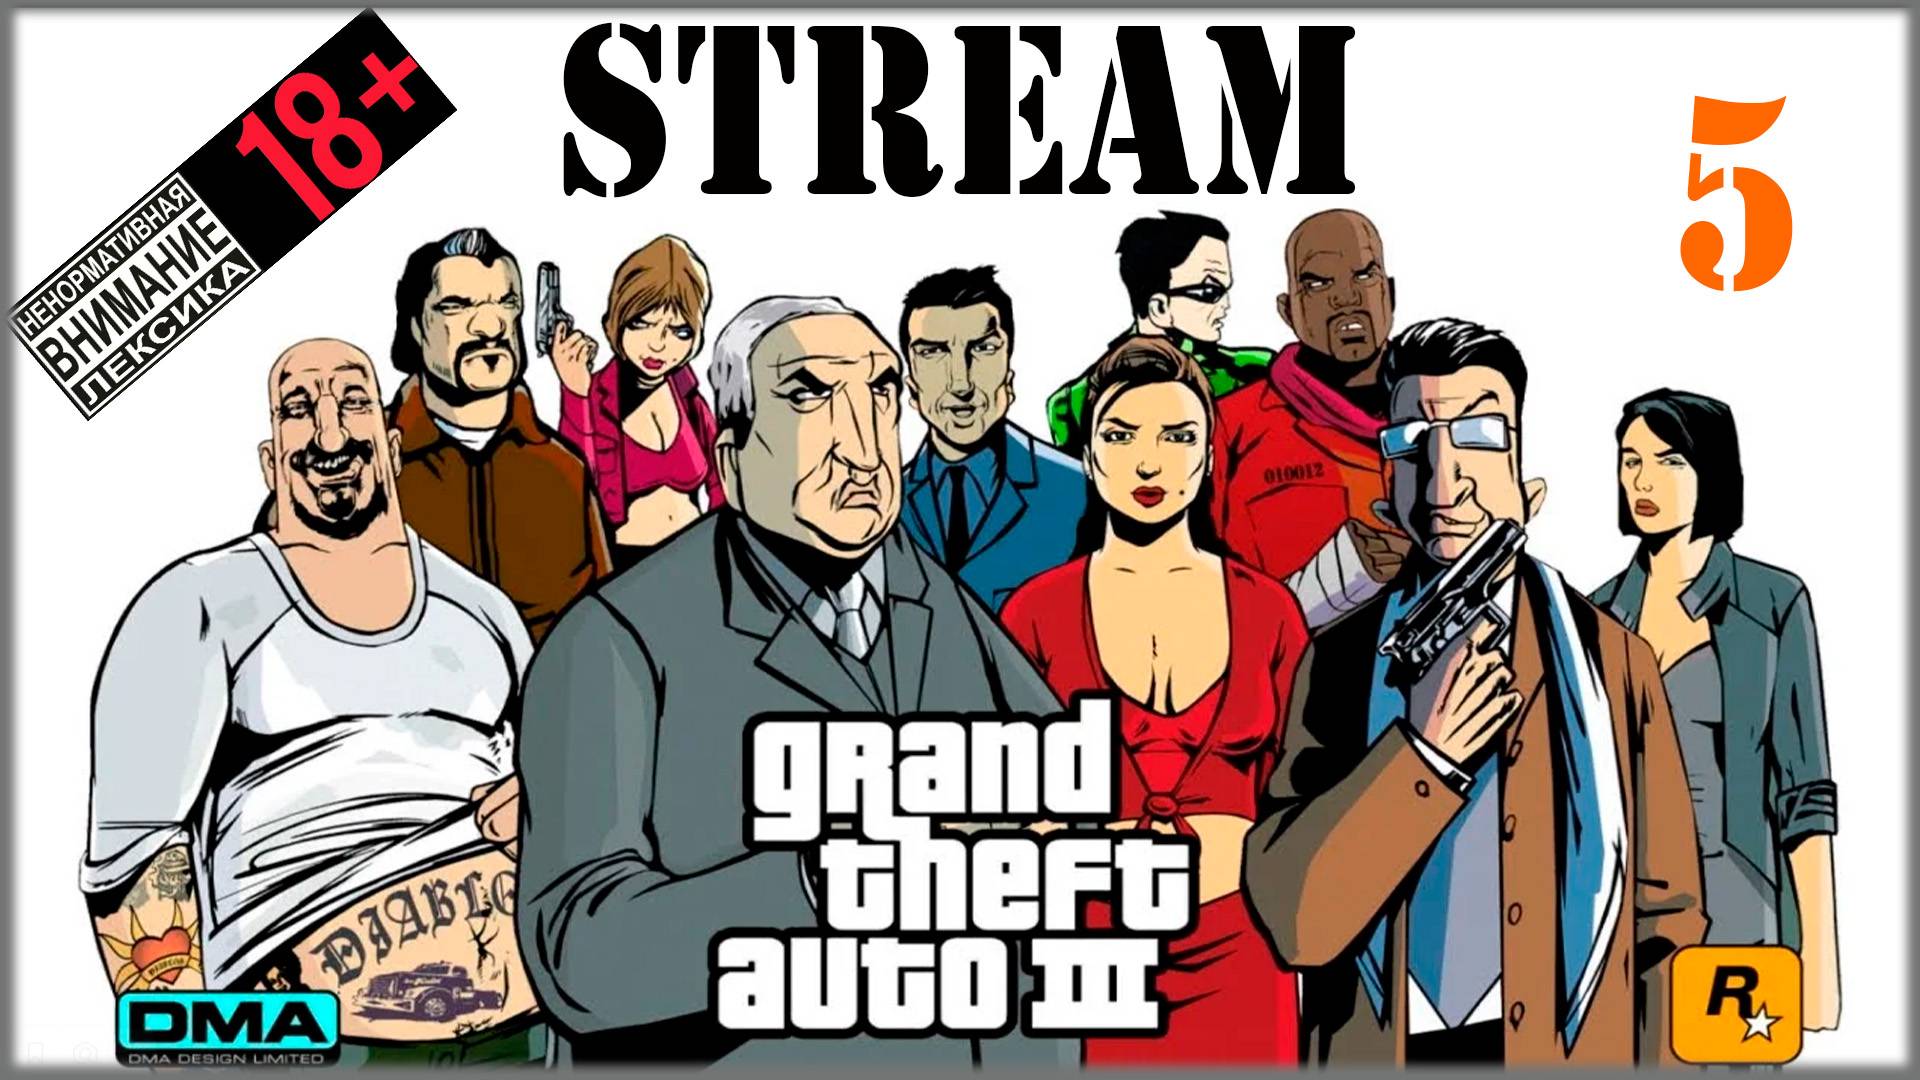 Stream - Grand Theft Auto III: The Definitive Edition #5 Сортирный коп